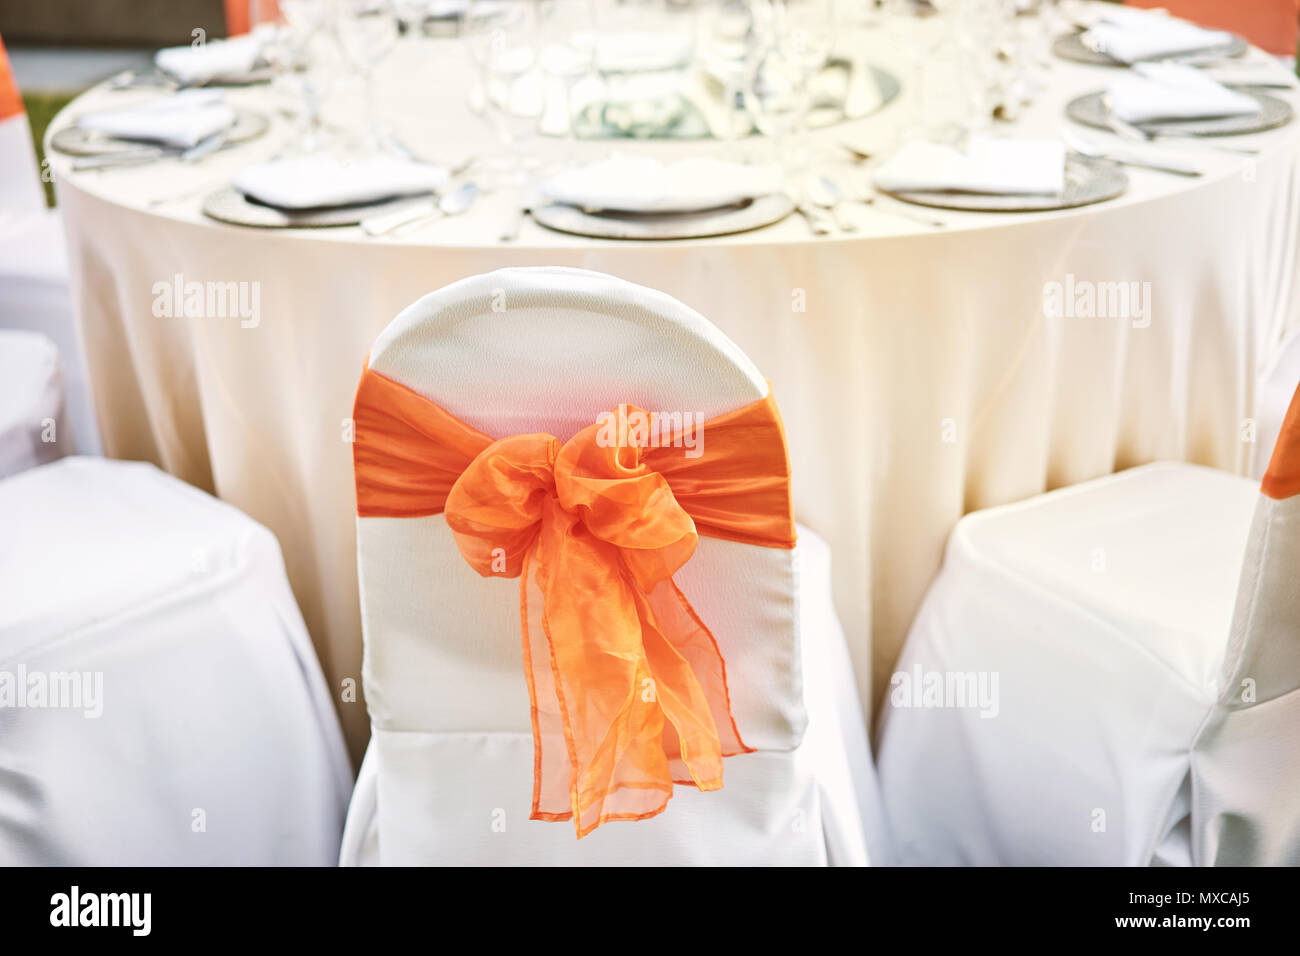 La recepción de la boda mesa con sillas de cubierta blanca de spandex con guillotina de organza naranja Foto de stock